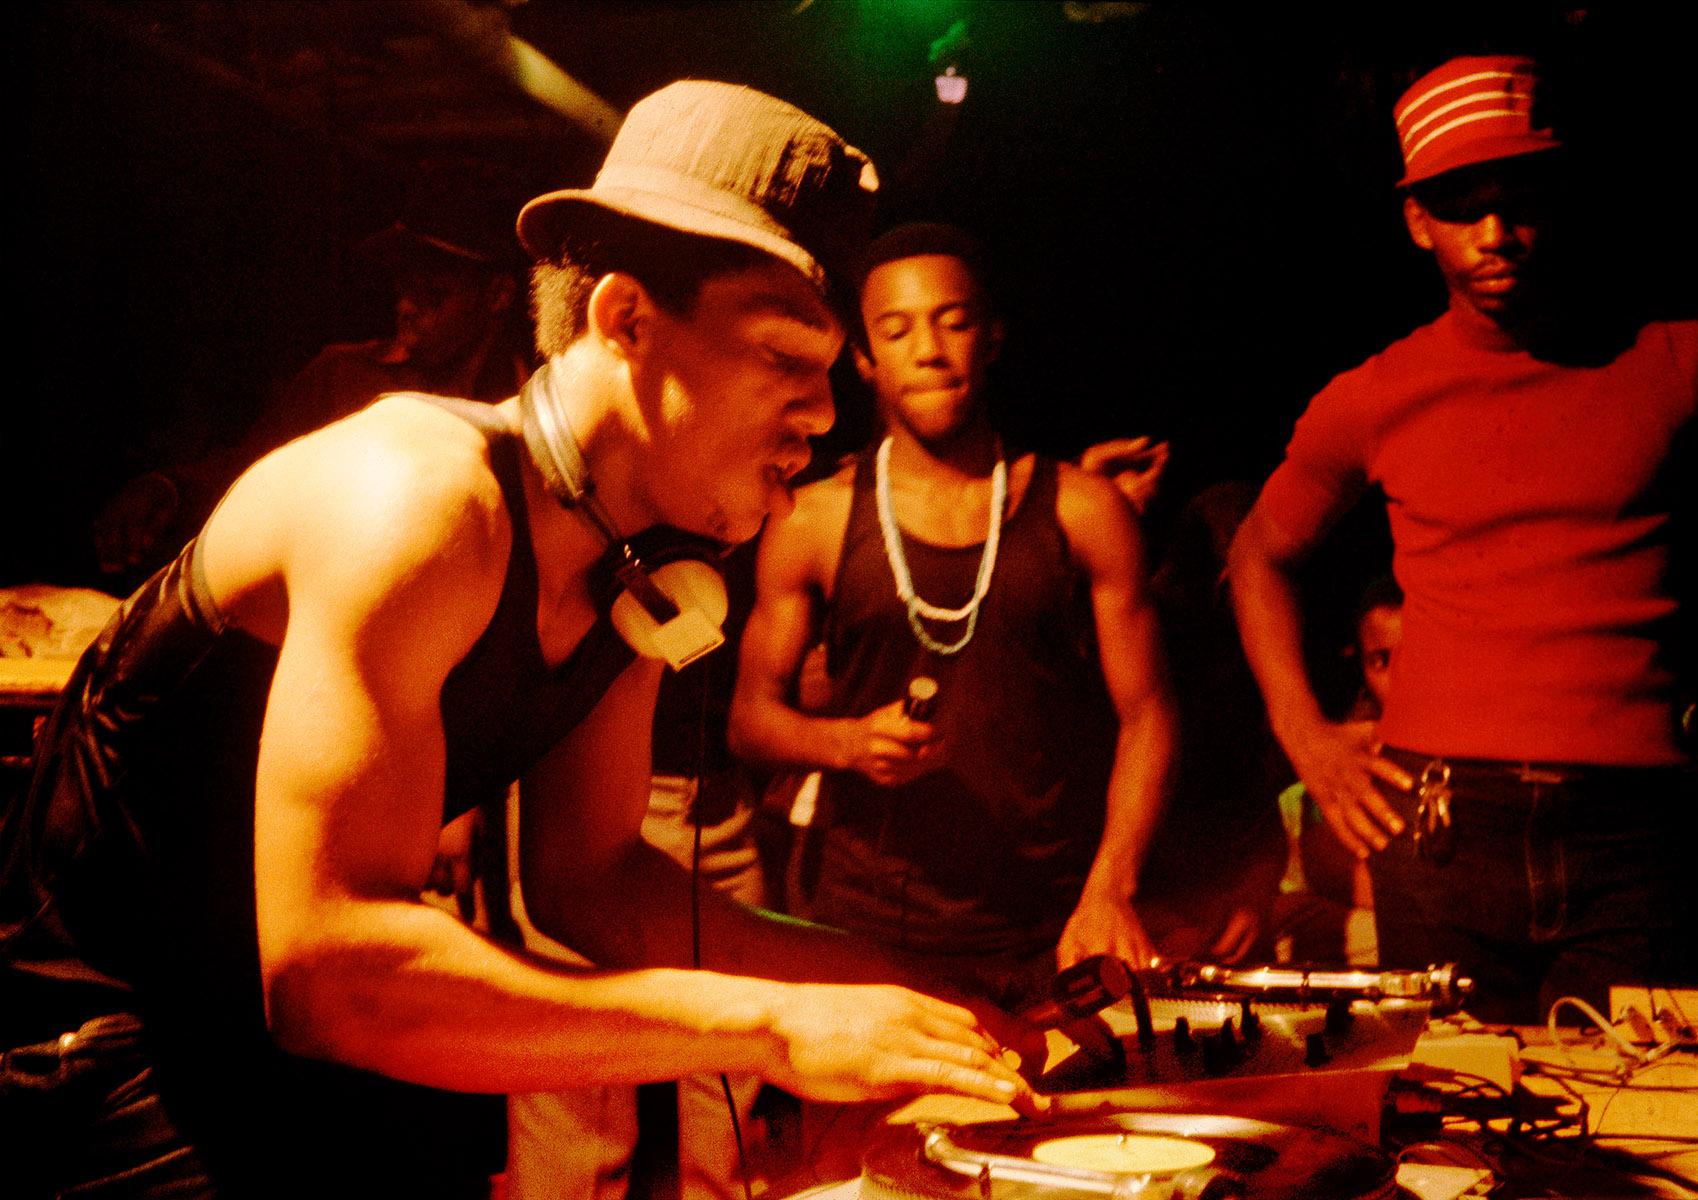 DJ Lovebug, Grandmaster Caz, Busy Bee at the Celebrity Club: Harlem, New York, 1980 von Charlie Ahearn, Regisseur von Wild Style (1982):
Eine bahnbrechende frühe Hip-Hop-Fotografie, die im Rahmen der Ausstellung gezeigt wird: New York, Neue Musik